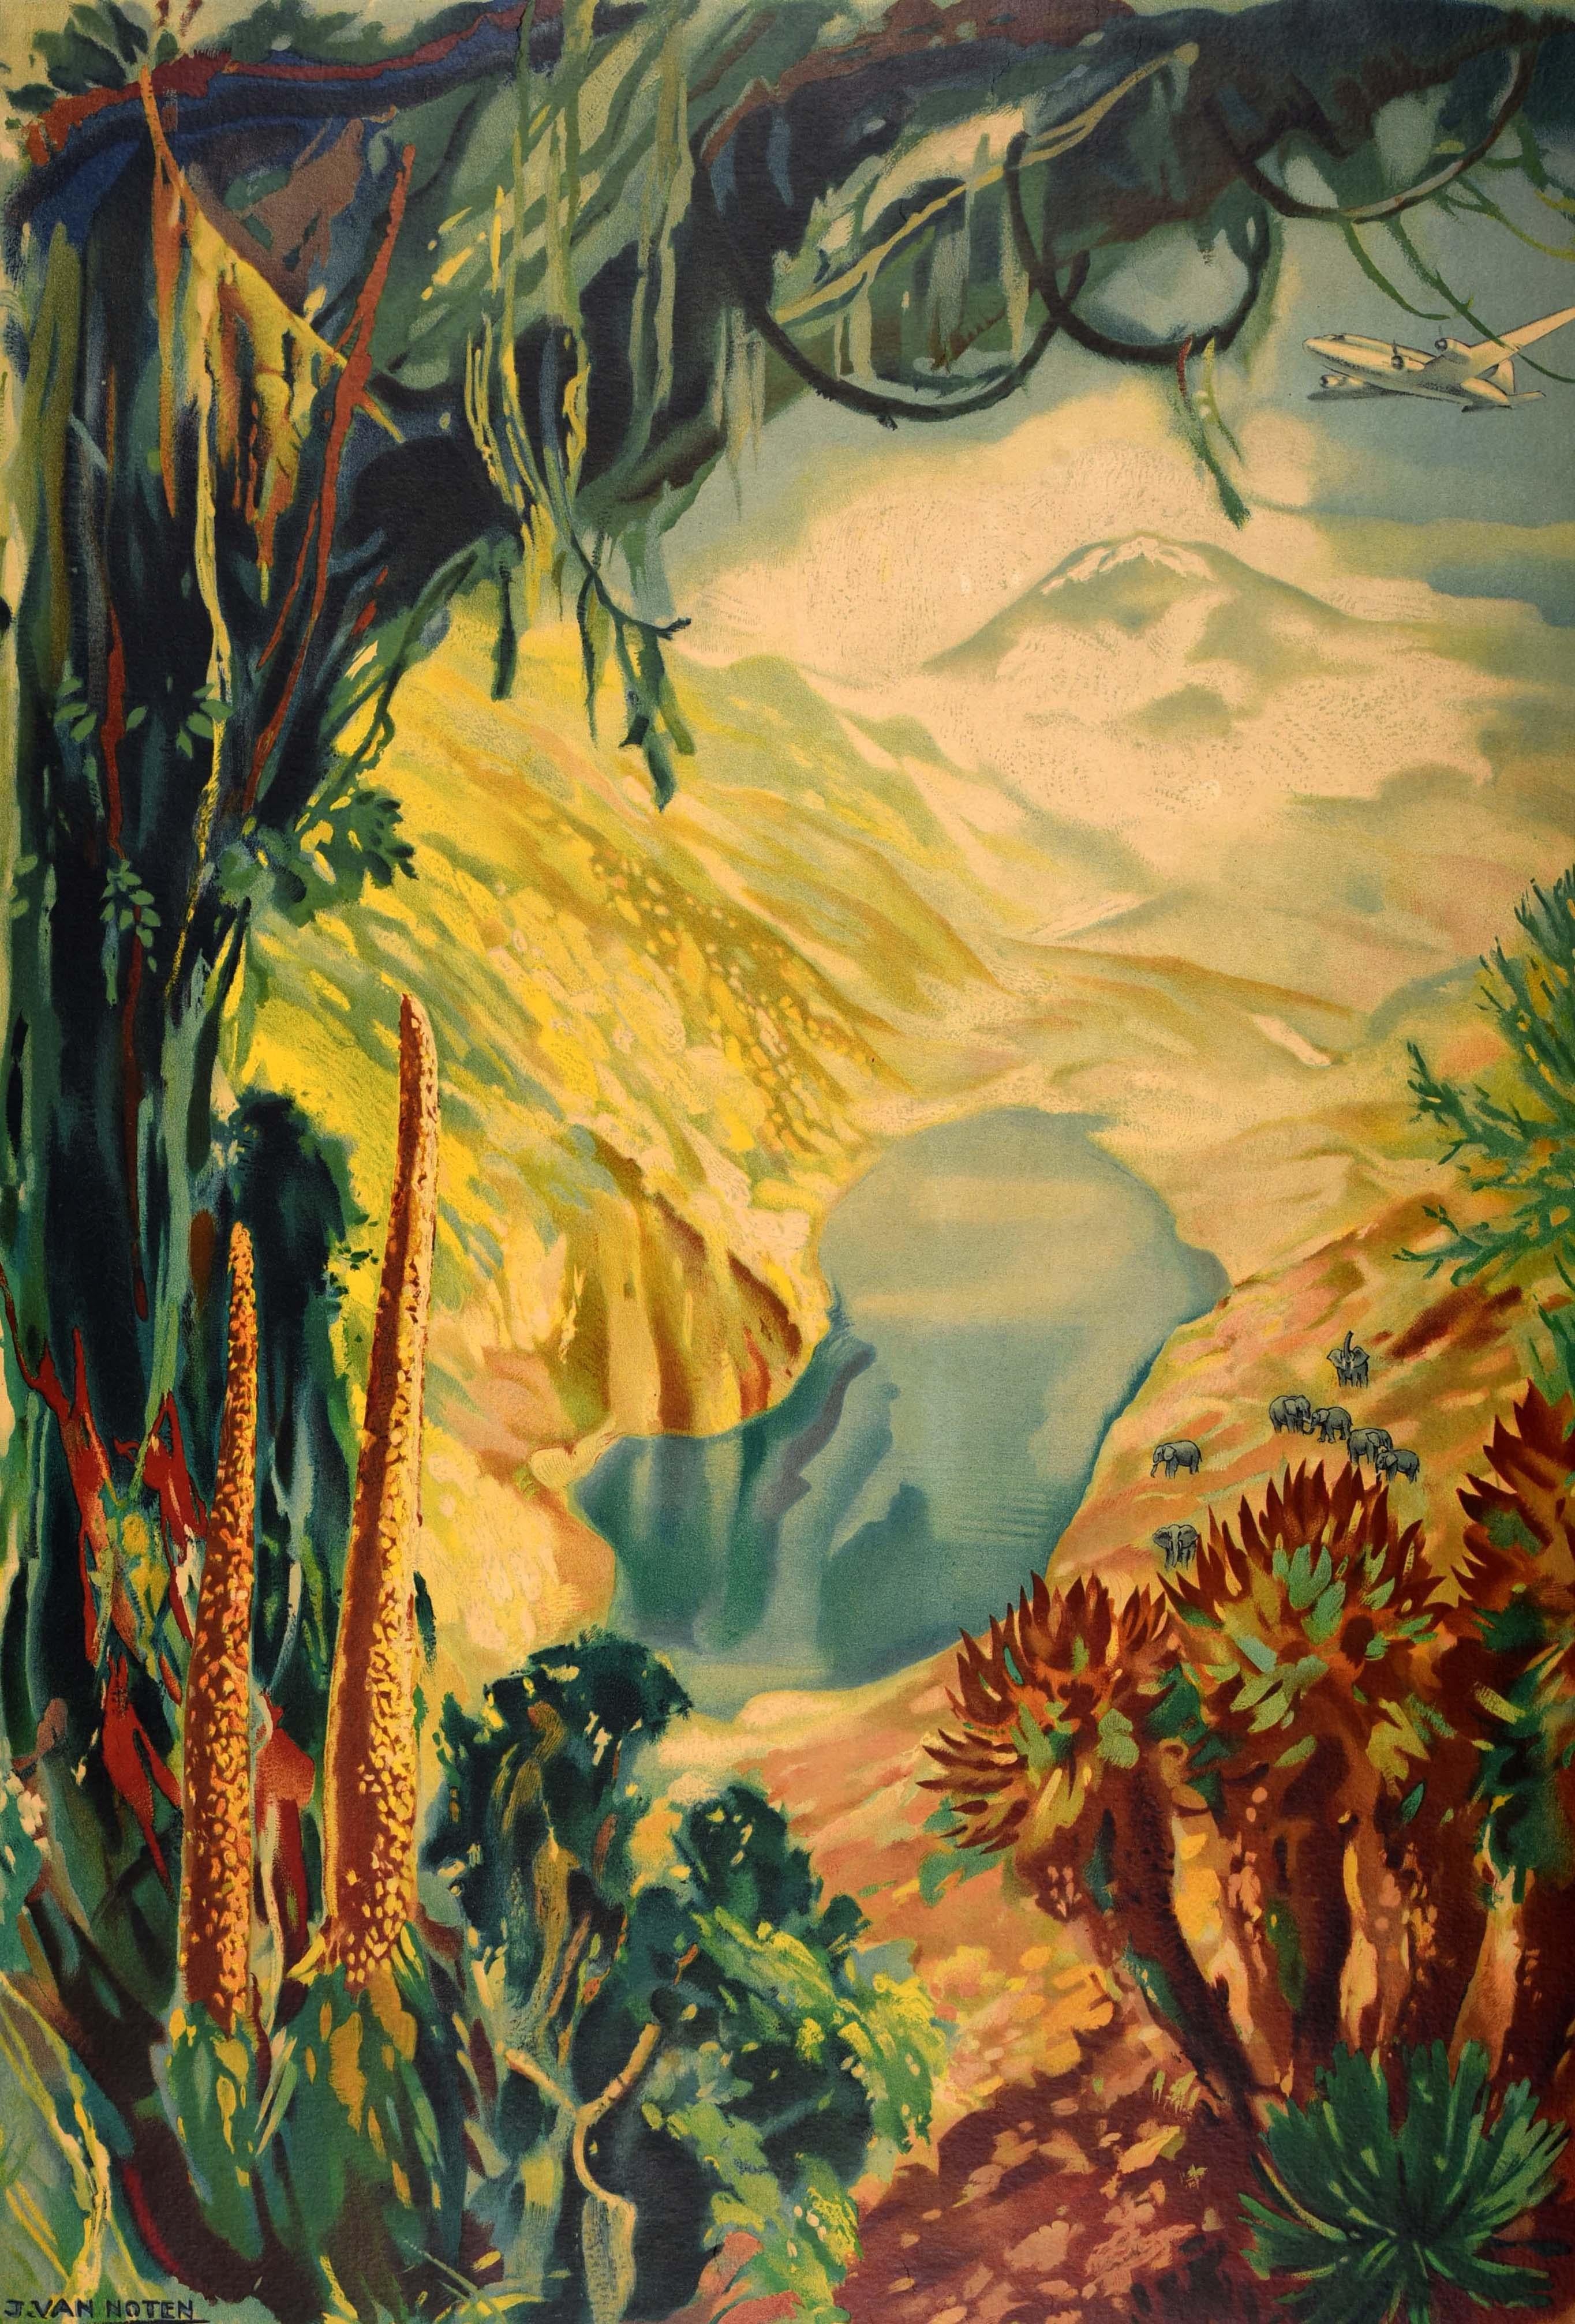 Affiche de voyage originale pour le Congo, émise par l'Office du Tourisme Colonial Belge. L'œuvre de Jean van Noten (1903-1982) représente un avion survolant des éléphants au bord d'un lac avec des montagnes au loin, encadrées par des arbres de la